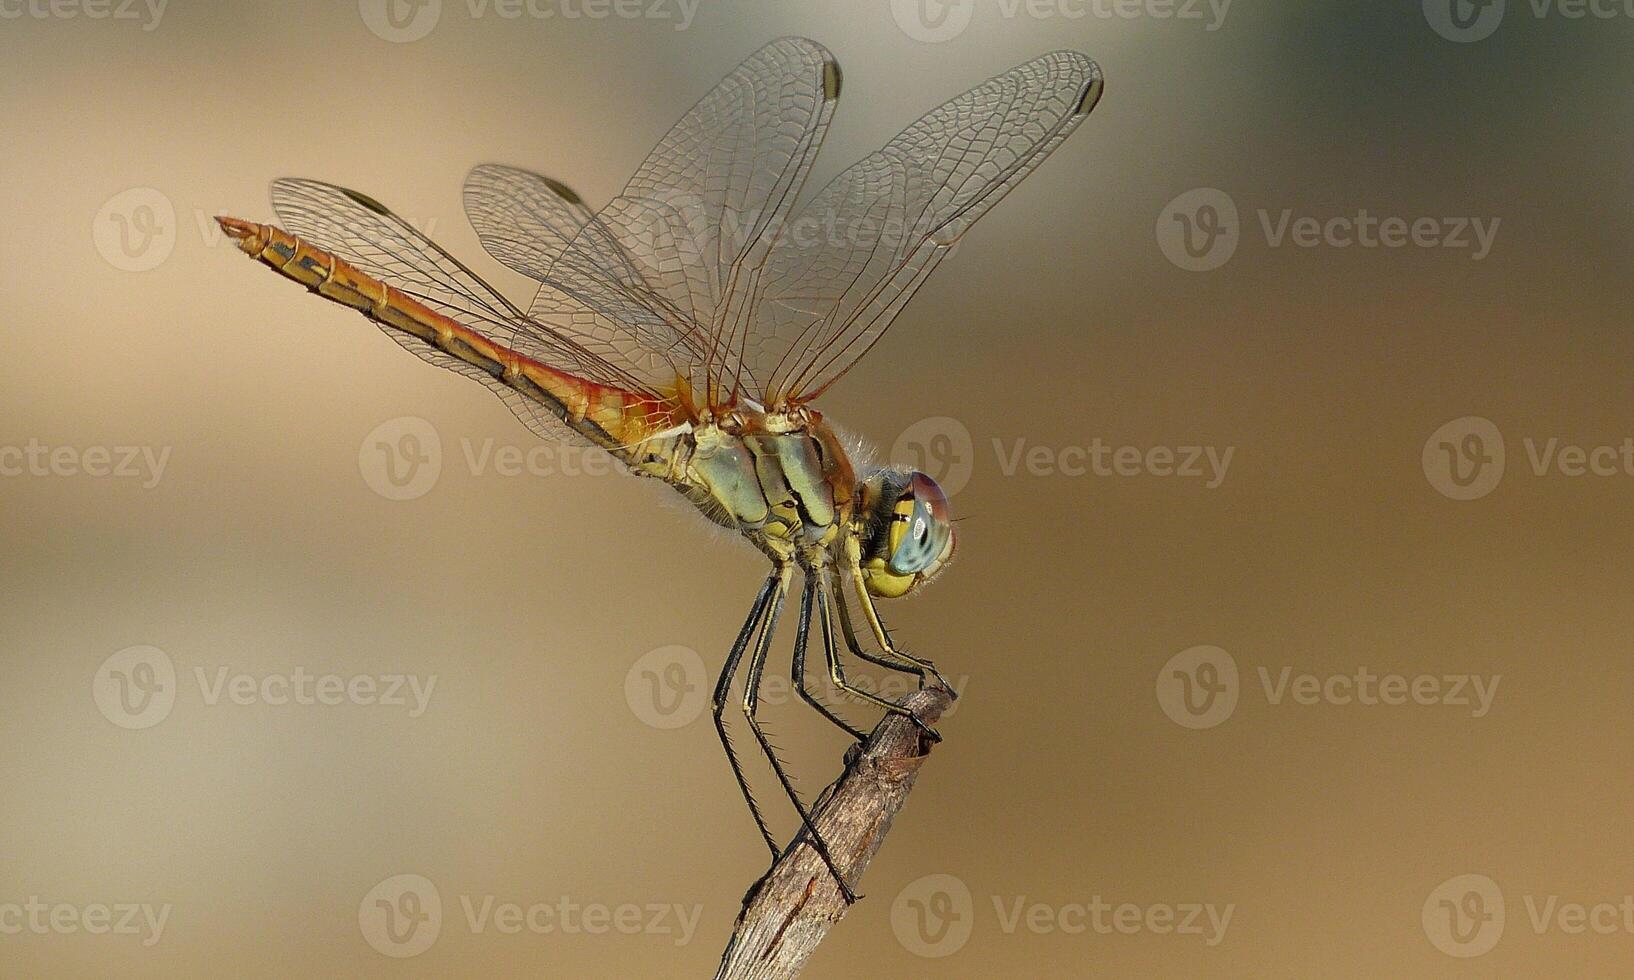 muito detalhado macro foto do uma libélula. macro tomada, mostrando detalhes do a libélula olhos e asas. lindo libélula dentro natural habitat